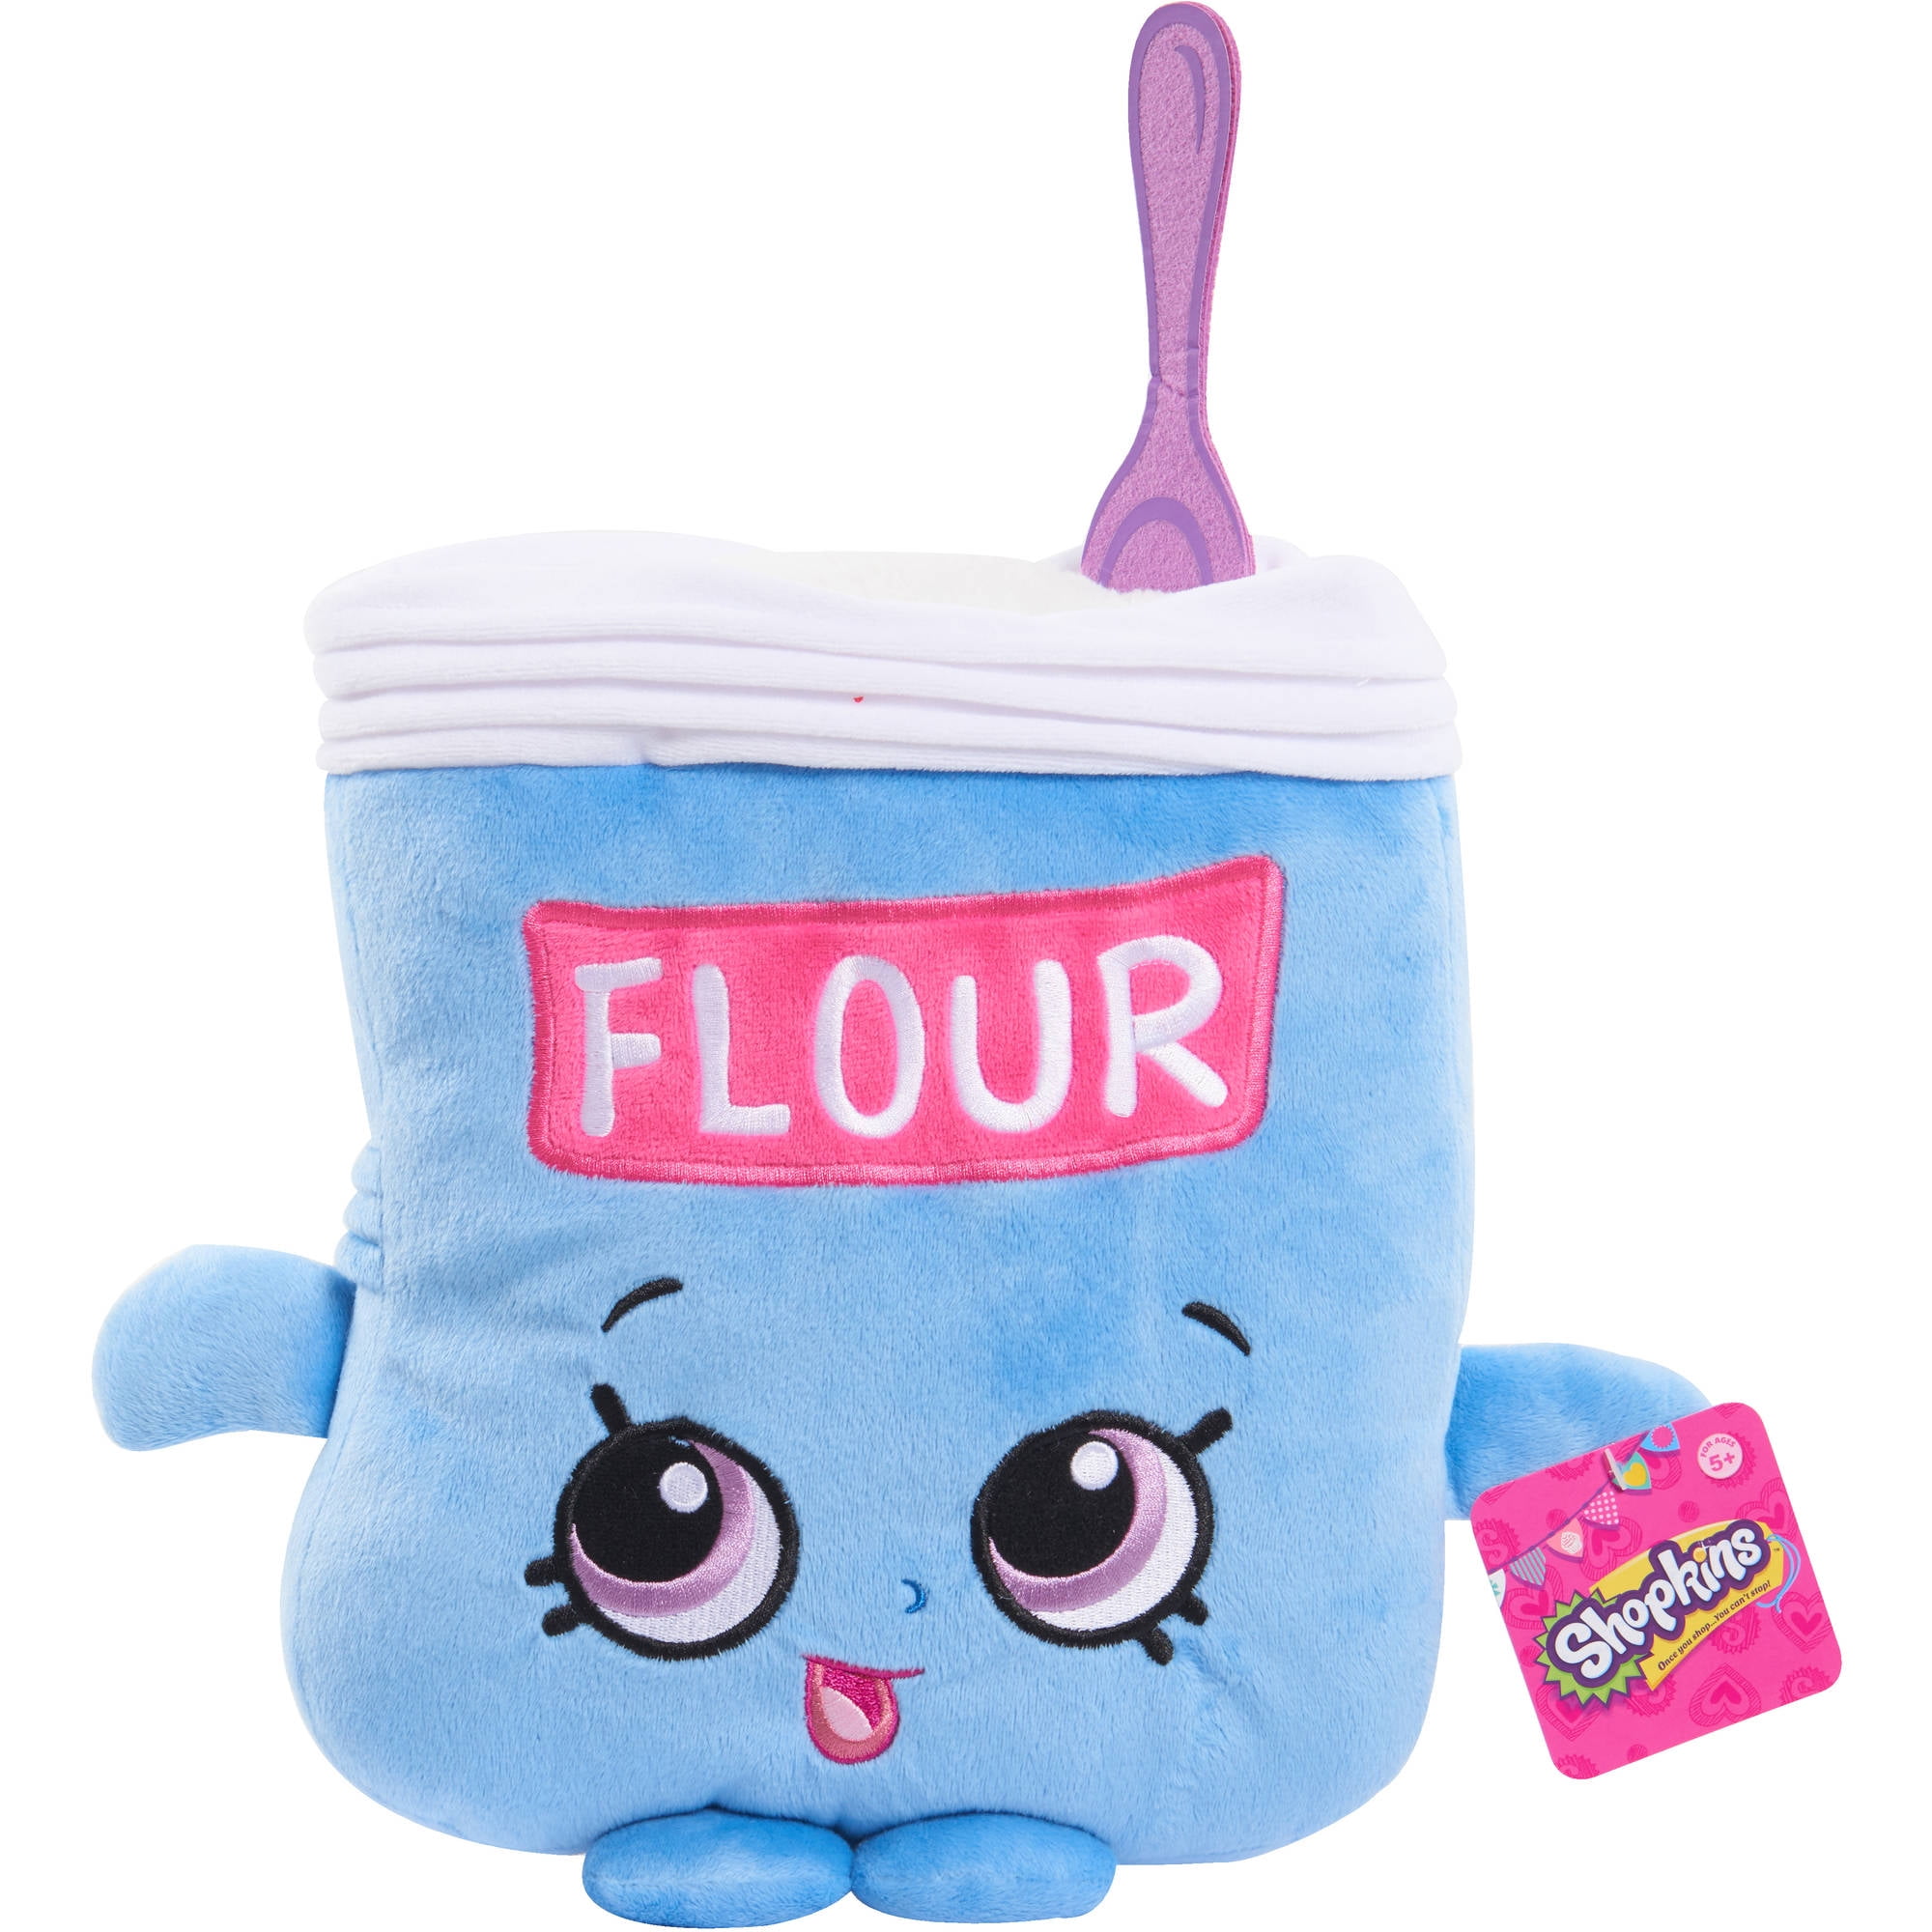 Shopkins Fleur Flour Plush Toy 6" Official Licensed S 5 2013 for sale online